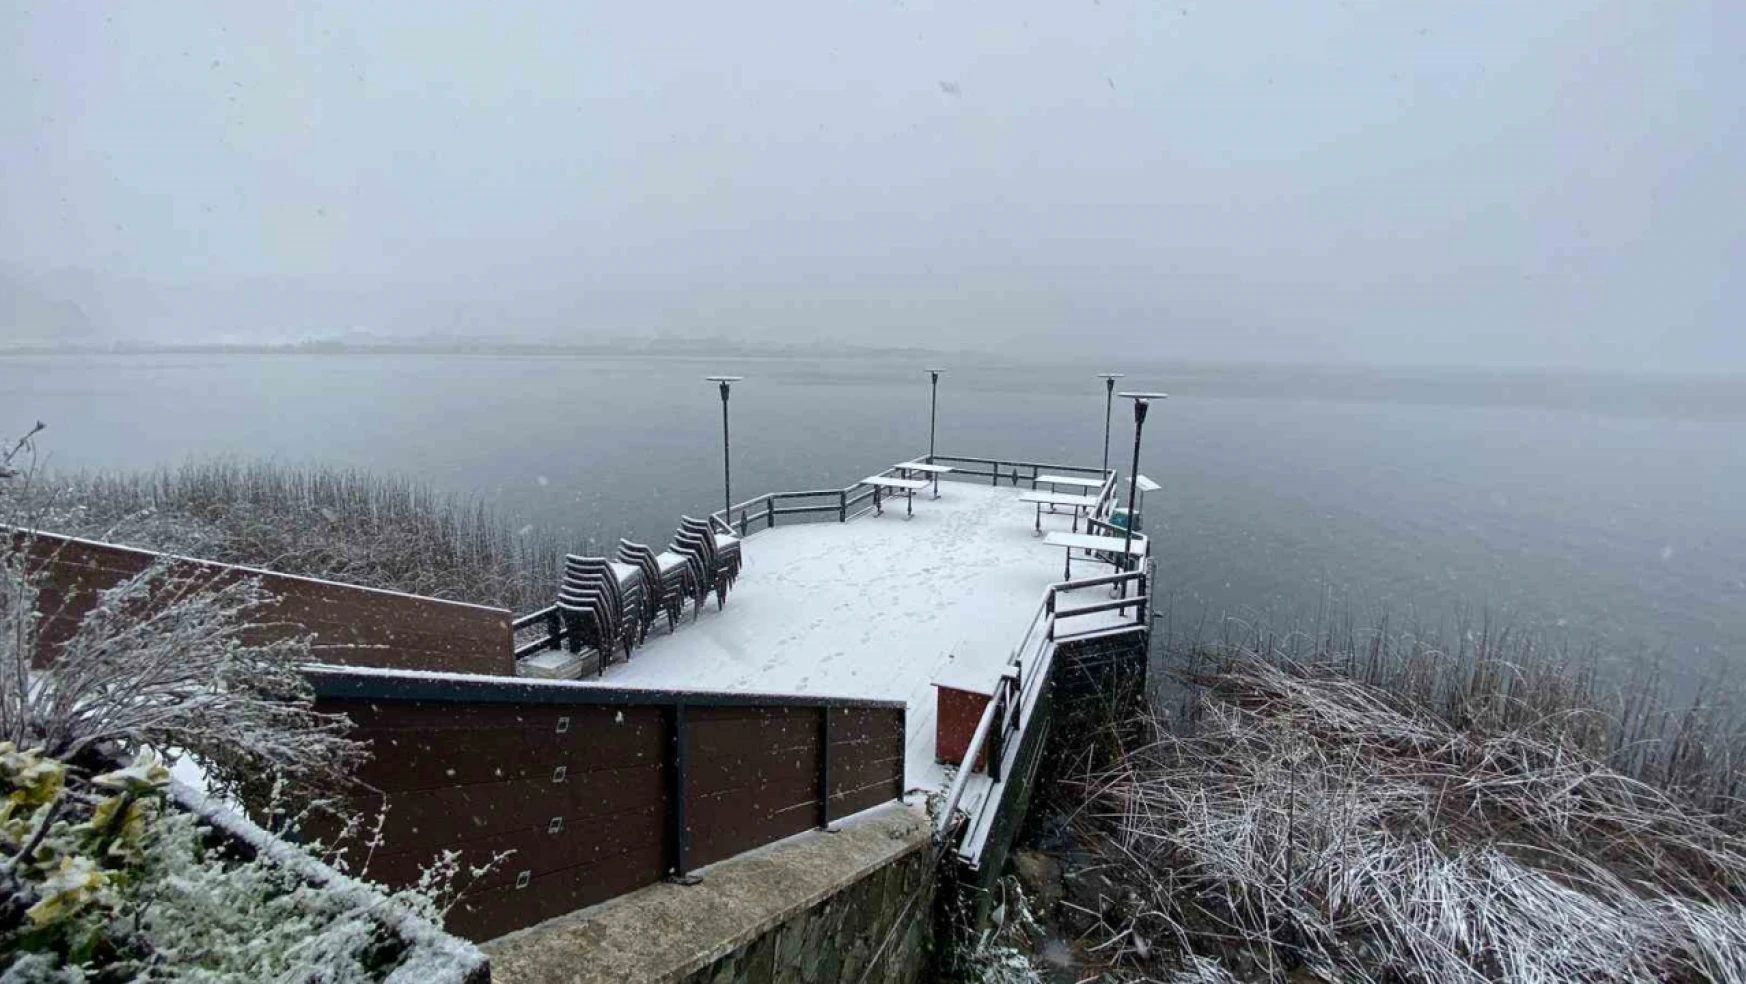 Abant Gölü Milli Parkı'nda kış güzelliği